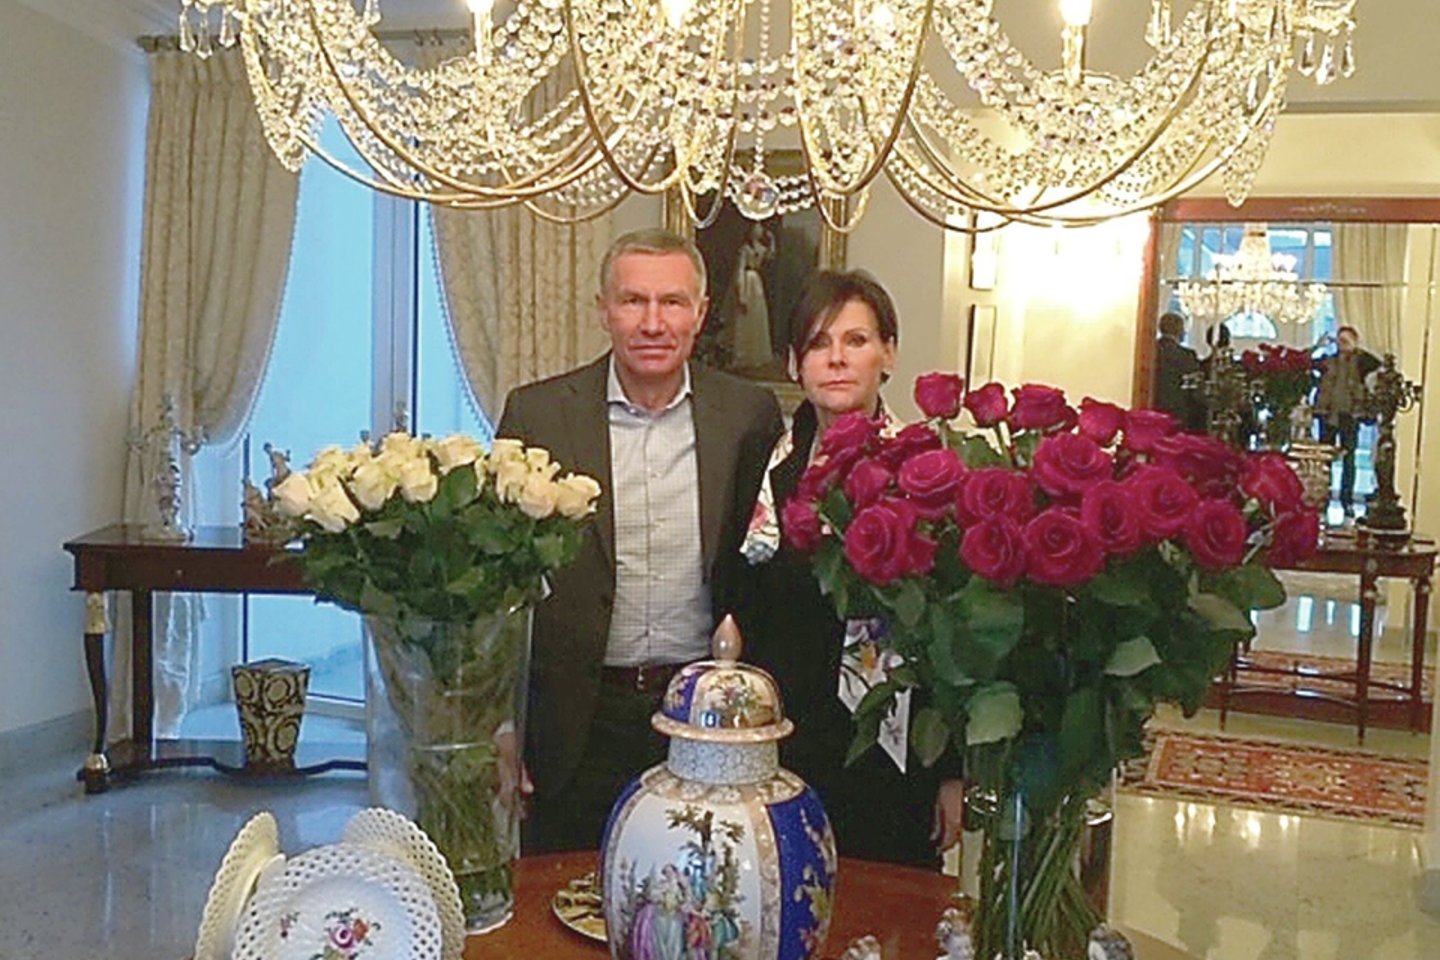 R.Karpavičius Palangoje iki 2018 m. lapkričio gyveno su pirmąja žmona Audrone.<br>Nuotr. iš asmeninio albumo